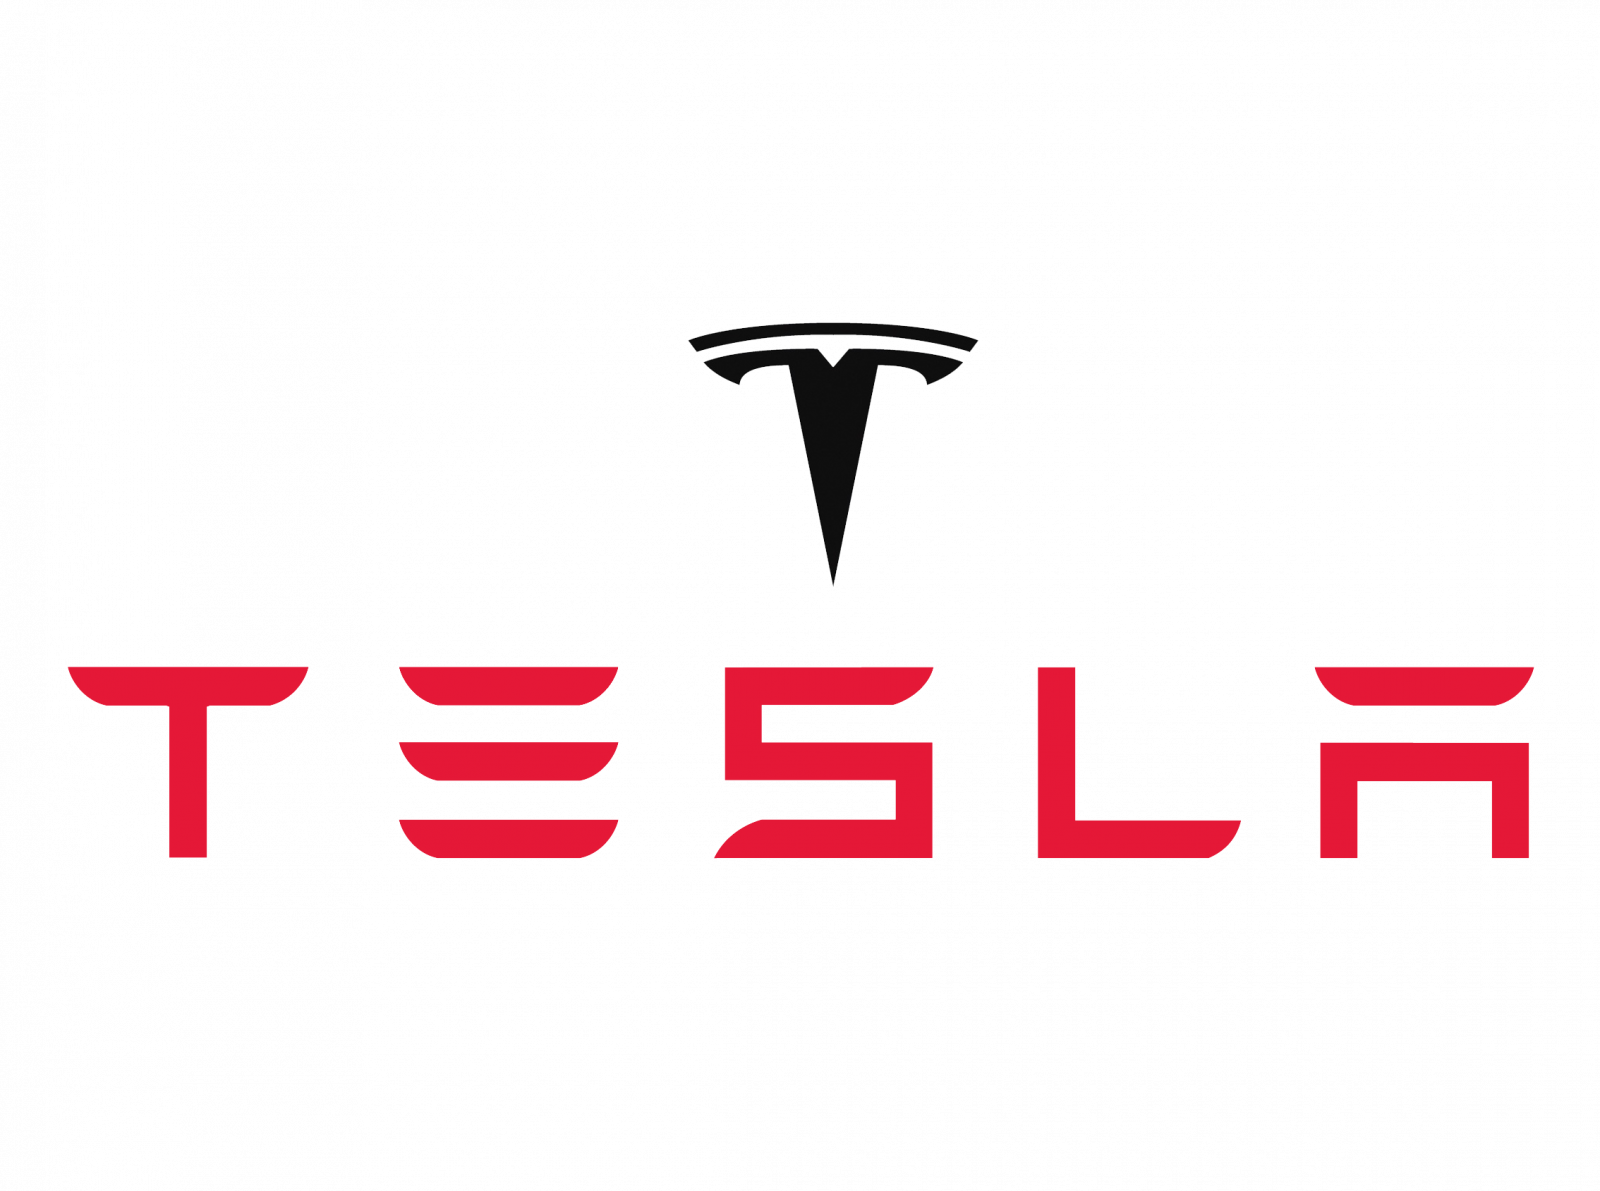 Fin du département de relation publique chez Tesla